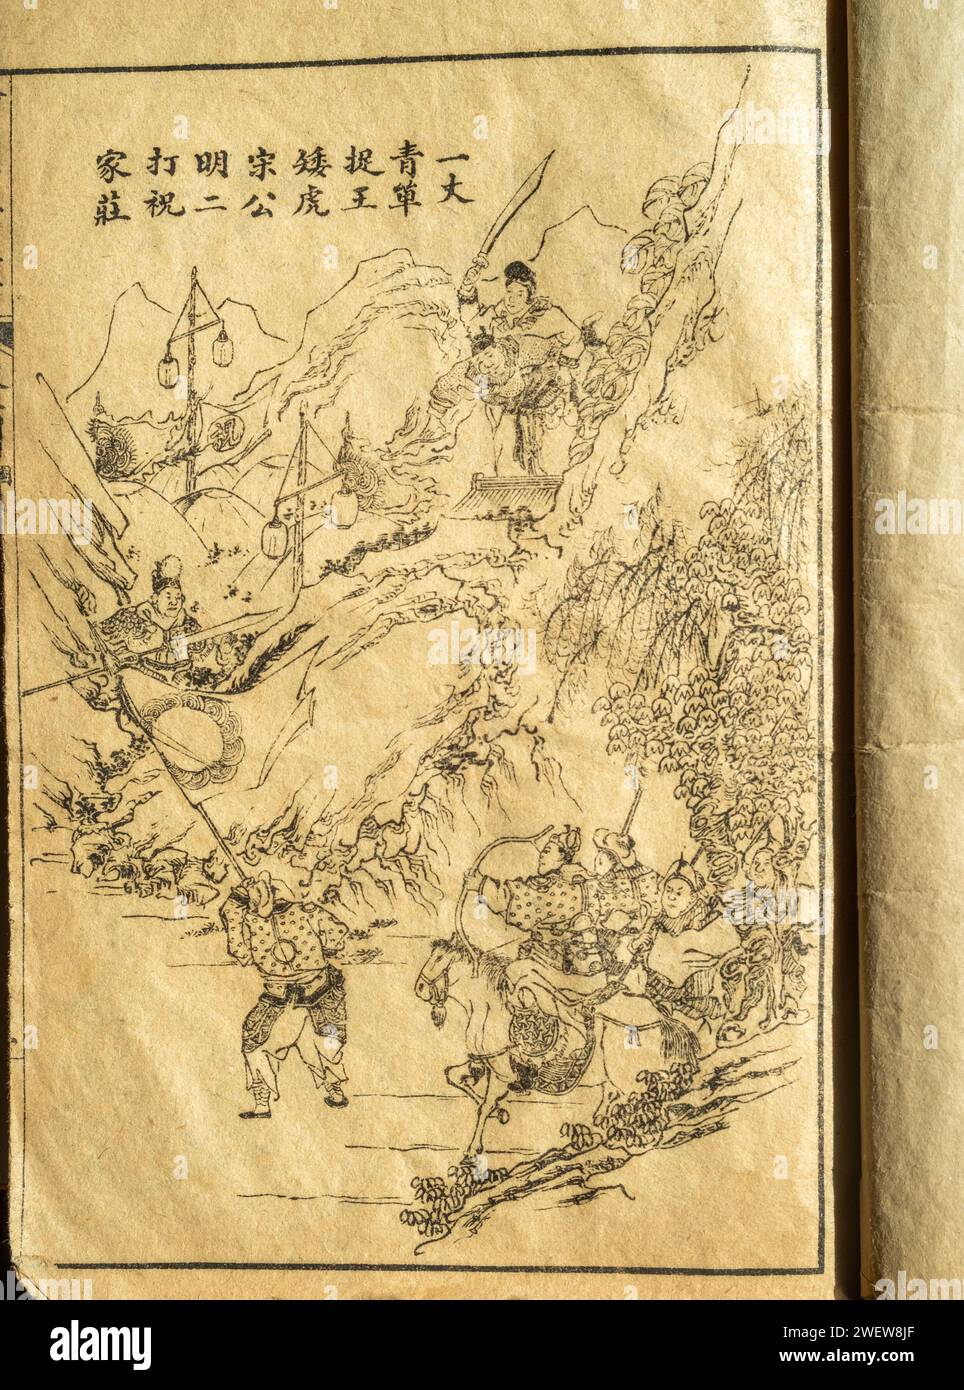 Illustration à l'intérieur de la page du roman chinois Water Margin ou Outlaws of the Marsh par Shi Nai'an. Une copie de la dynastie Qing (1644-1911) . Banque D'Images